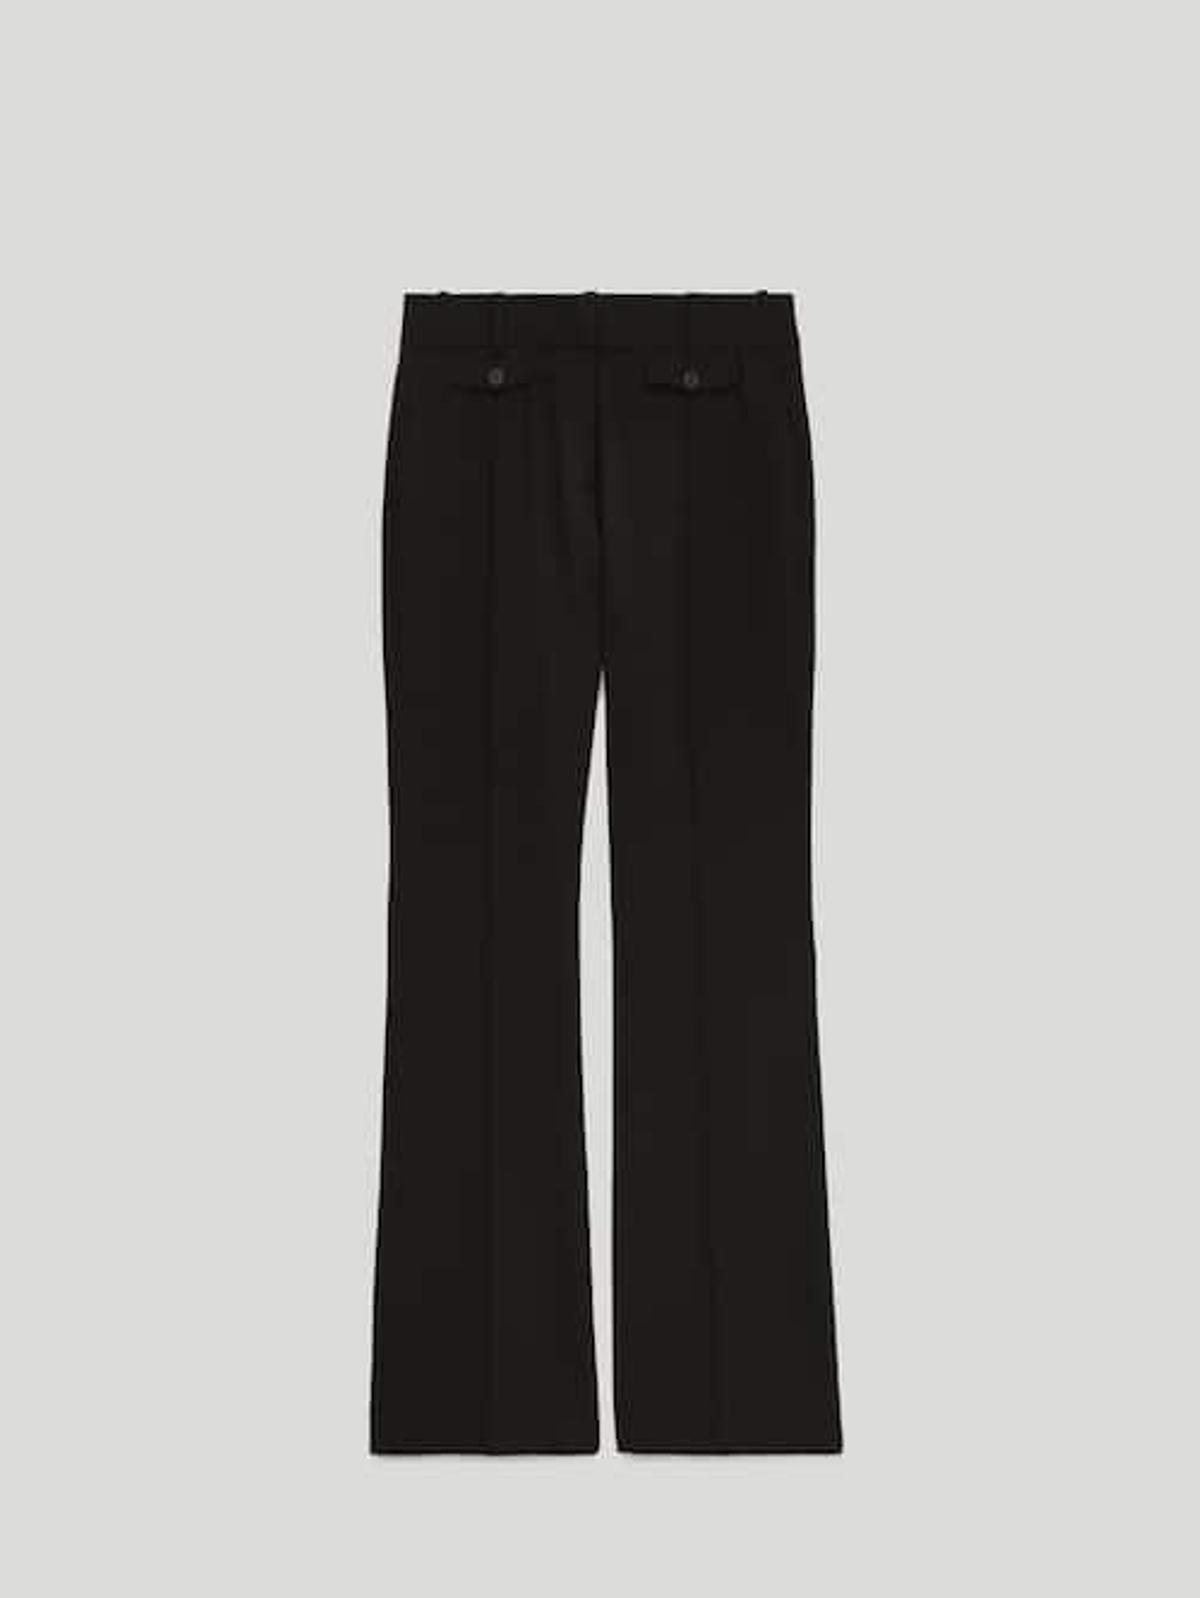 Pantalón negro bootcut, de Massimo Dutti (69,95 euros)